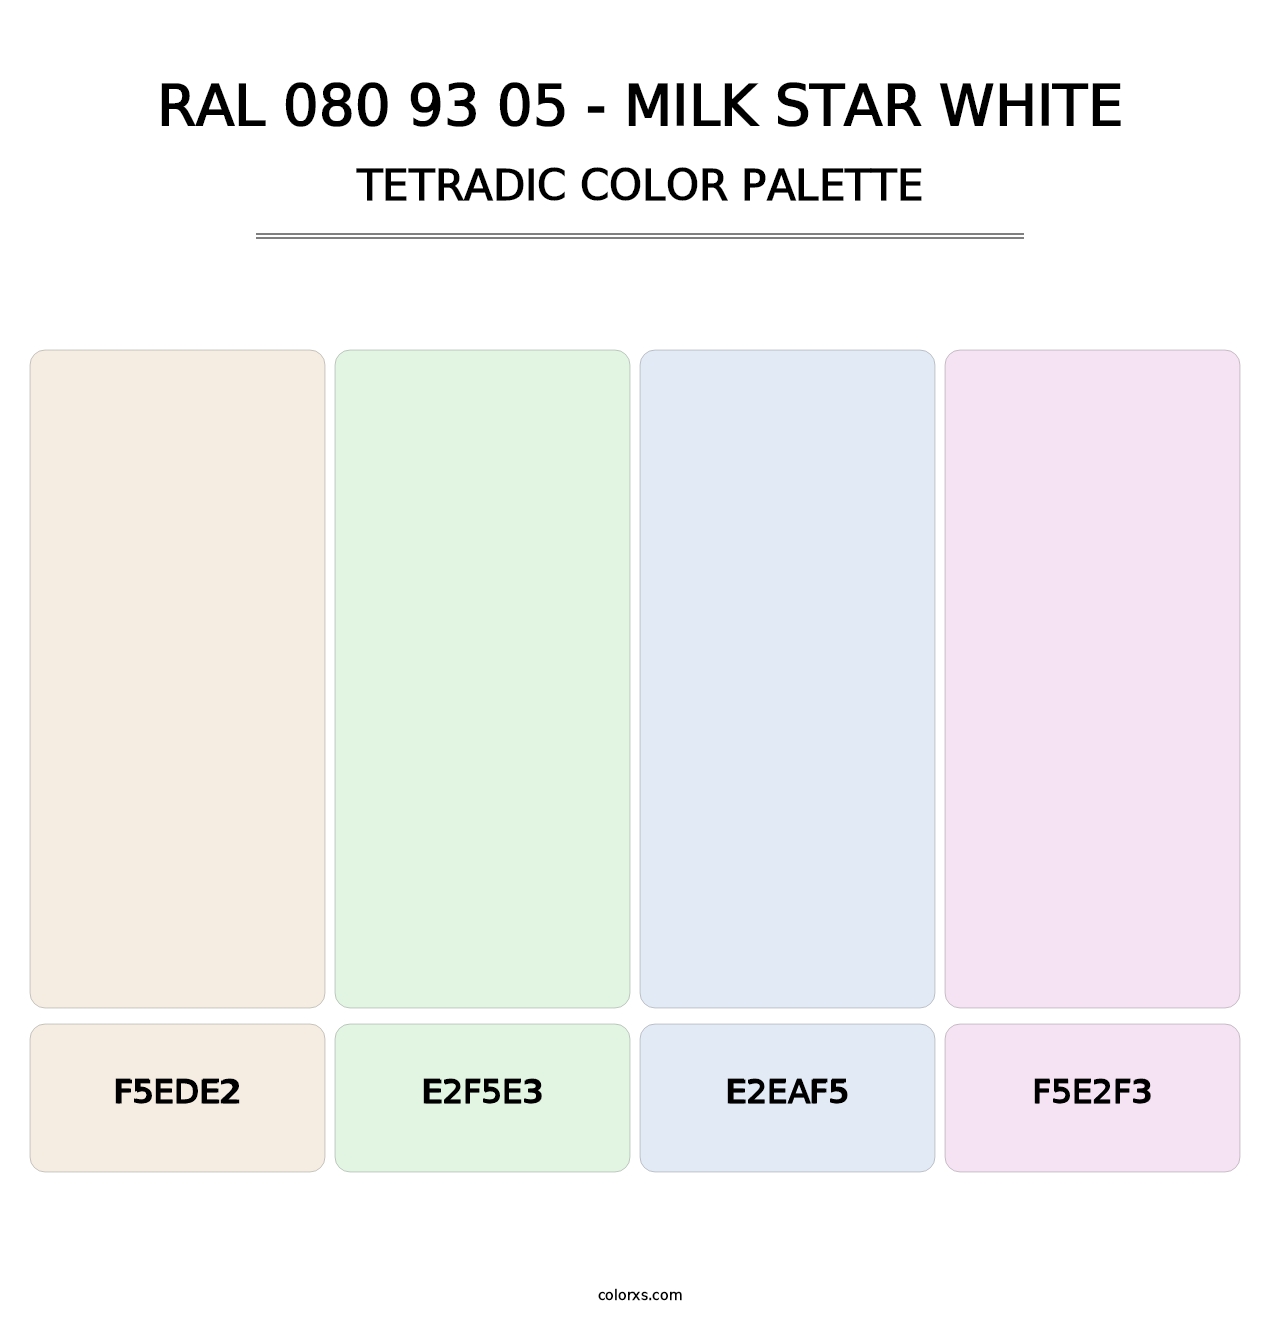 RAL 080 93 05 - Milk Star White - Tetradic Color Palette